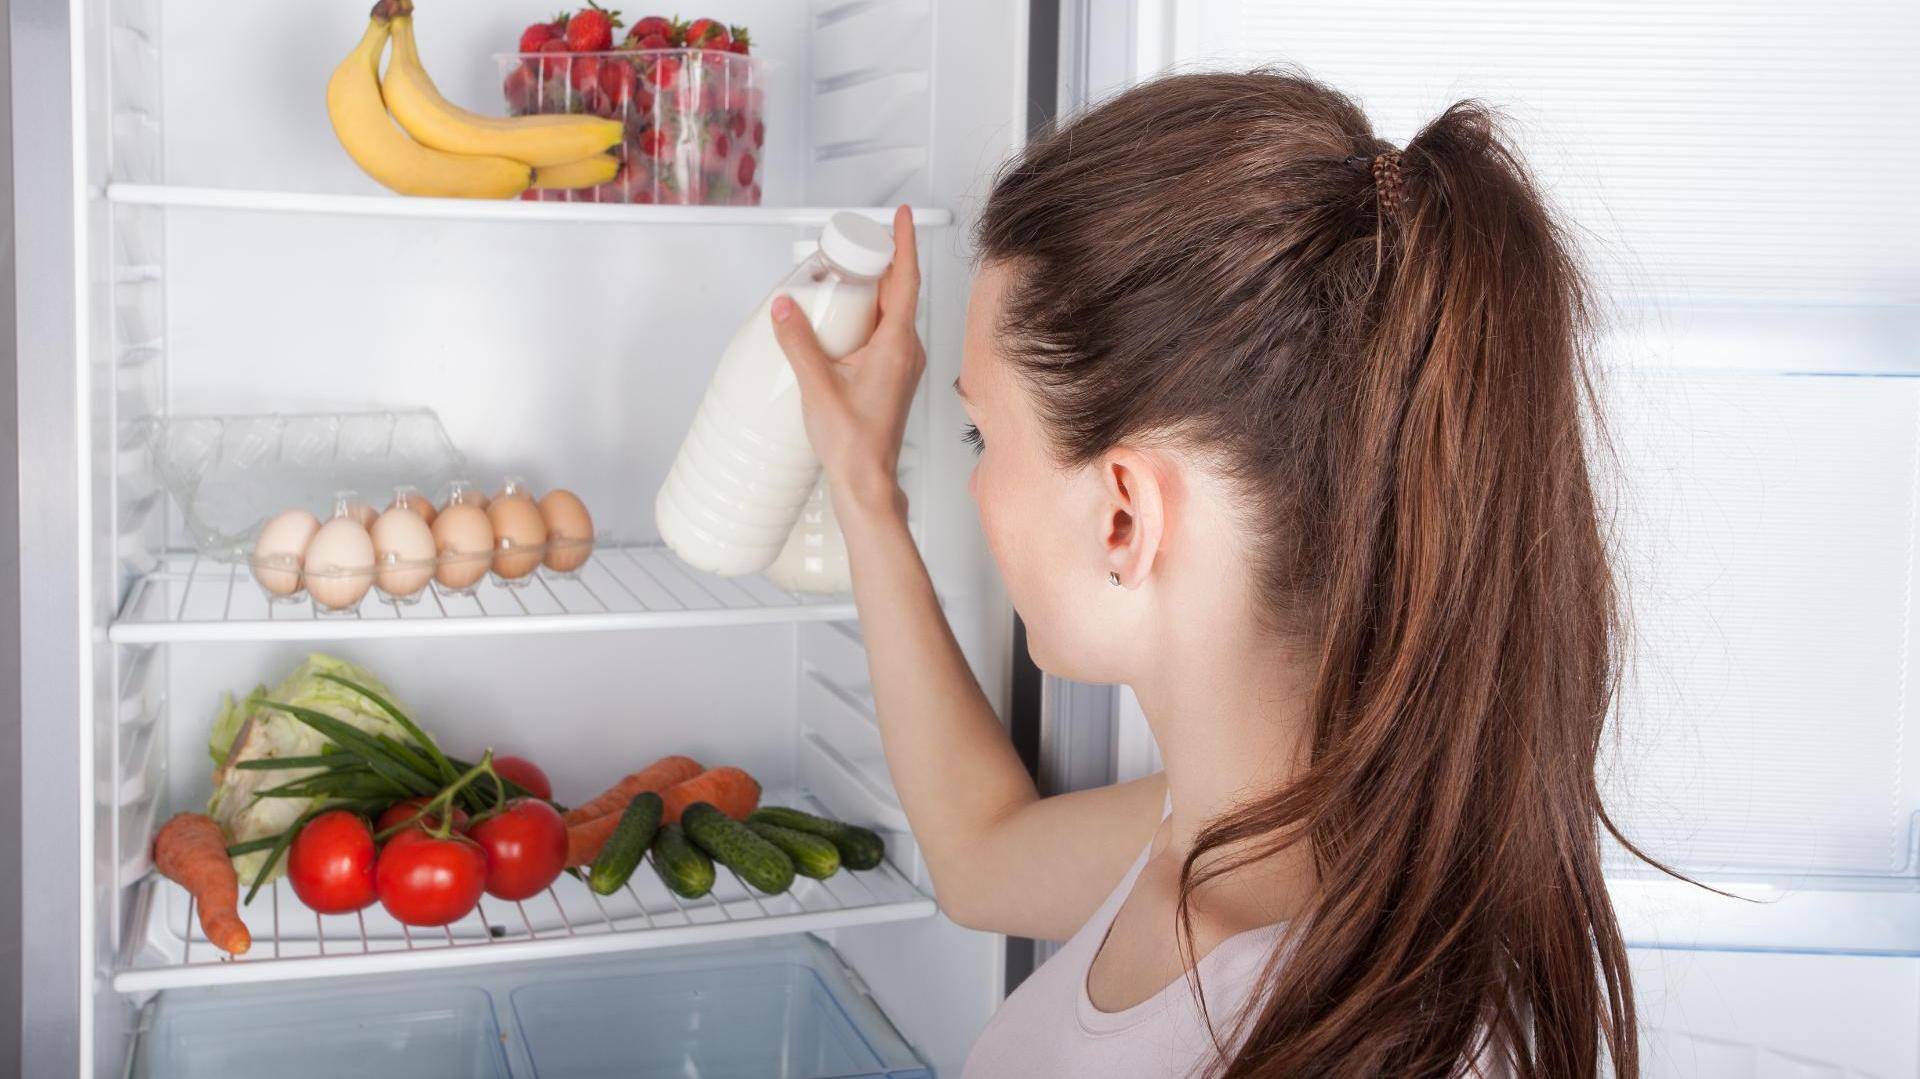 Убрать запах из холодильника быстро не отключая его – способы устранения